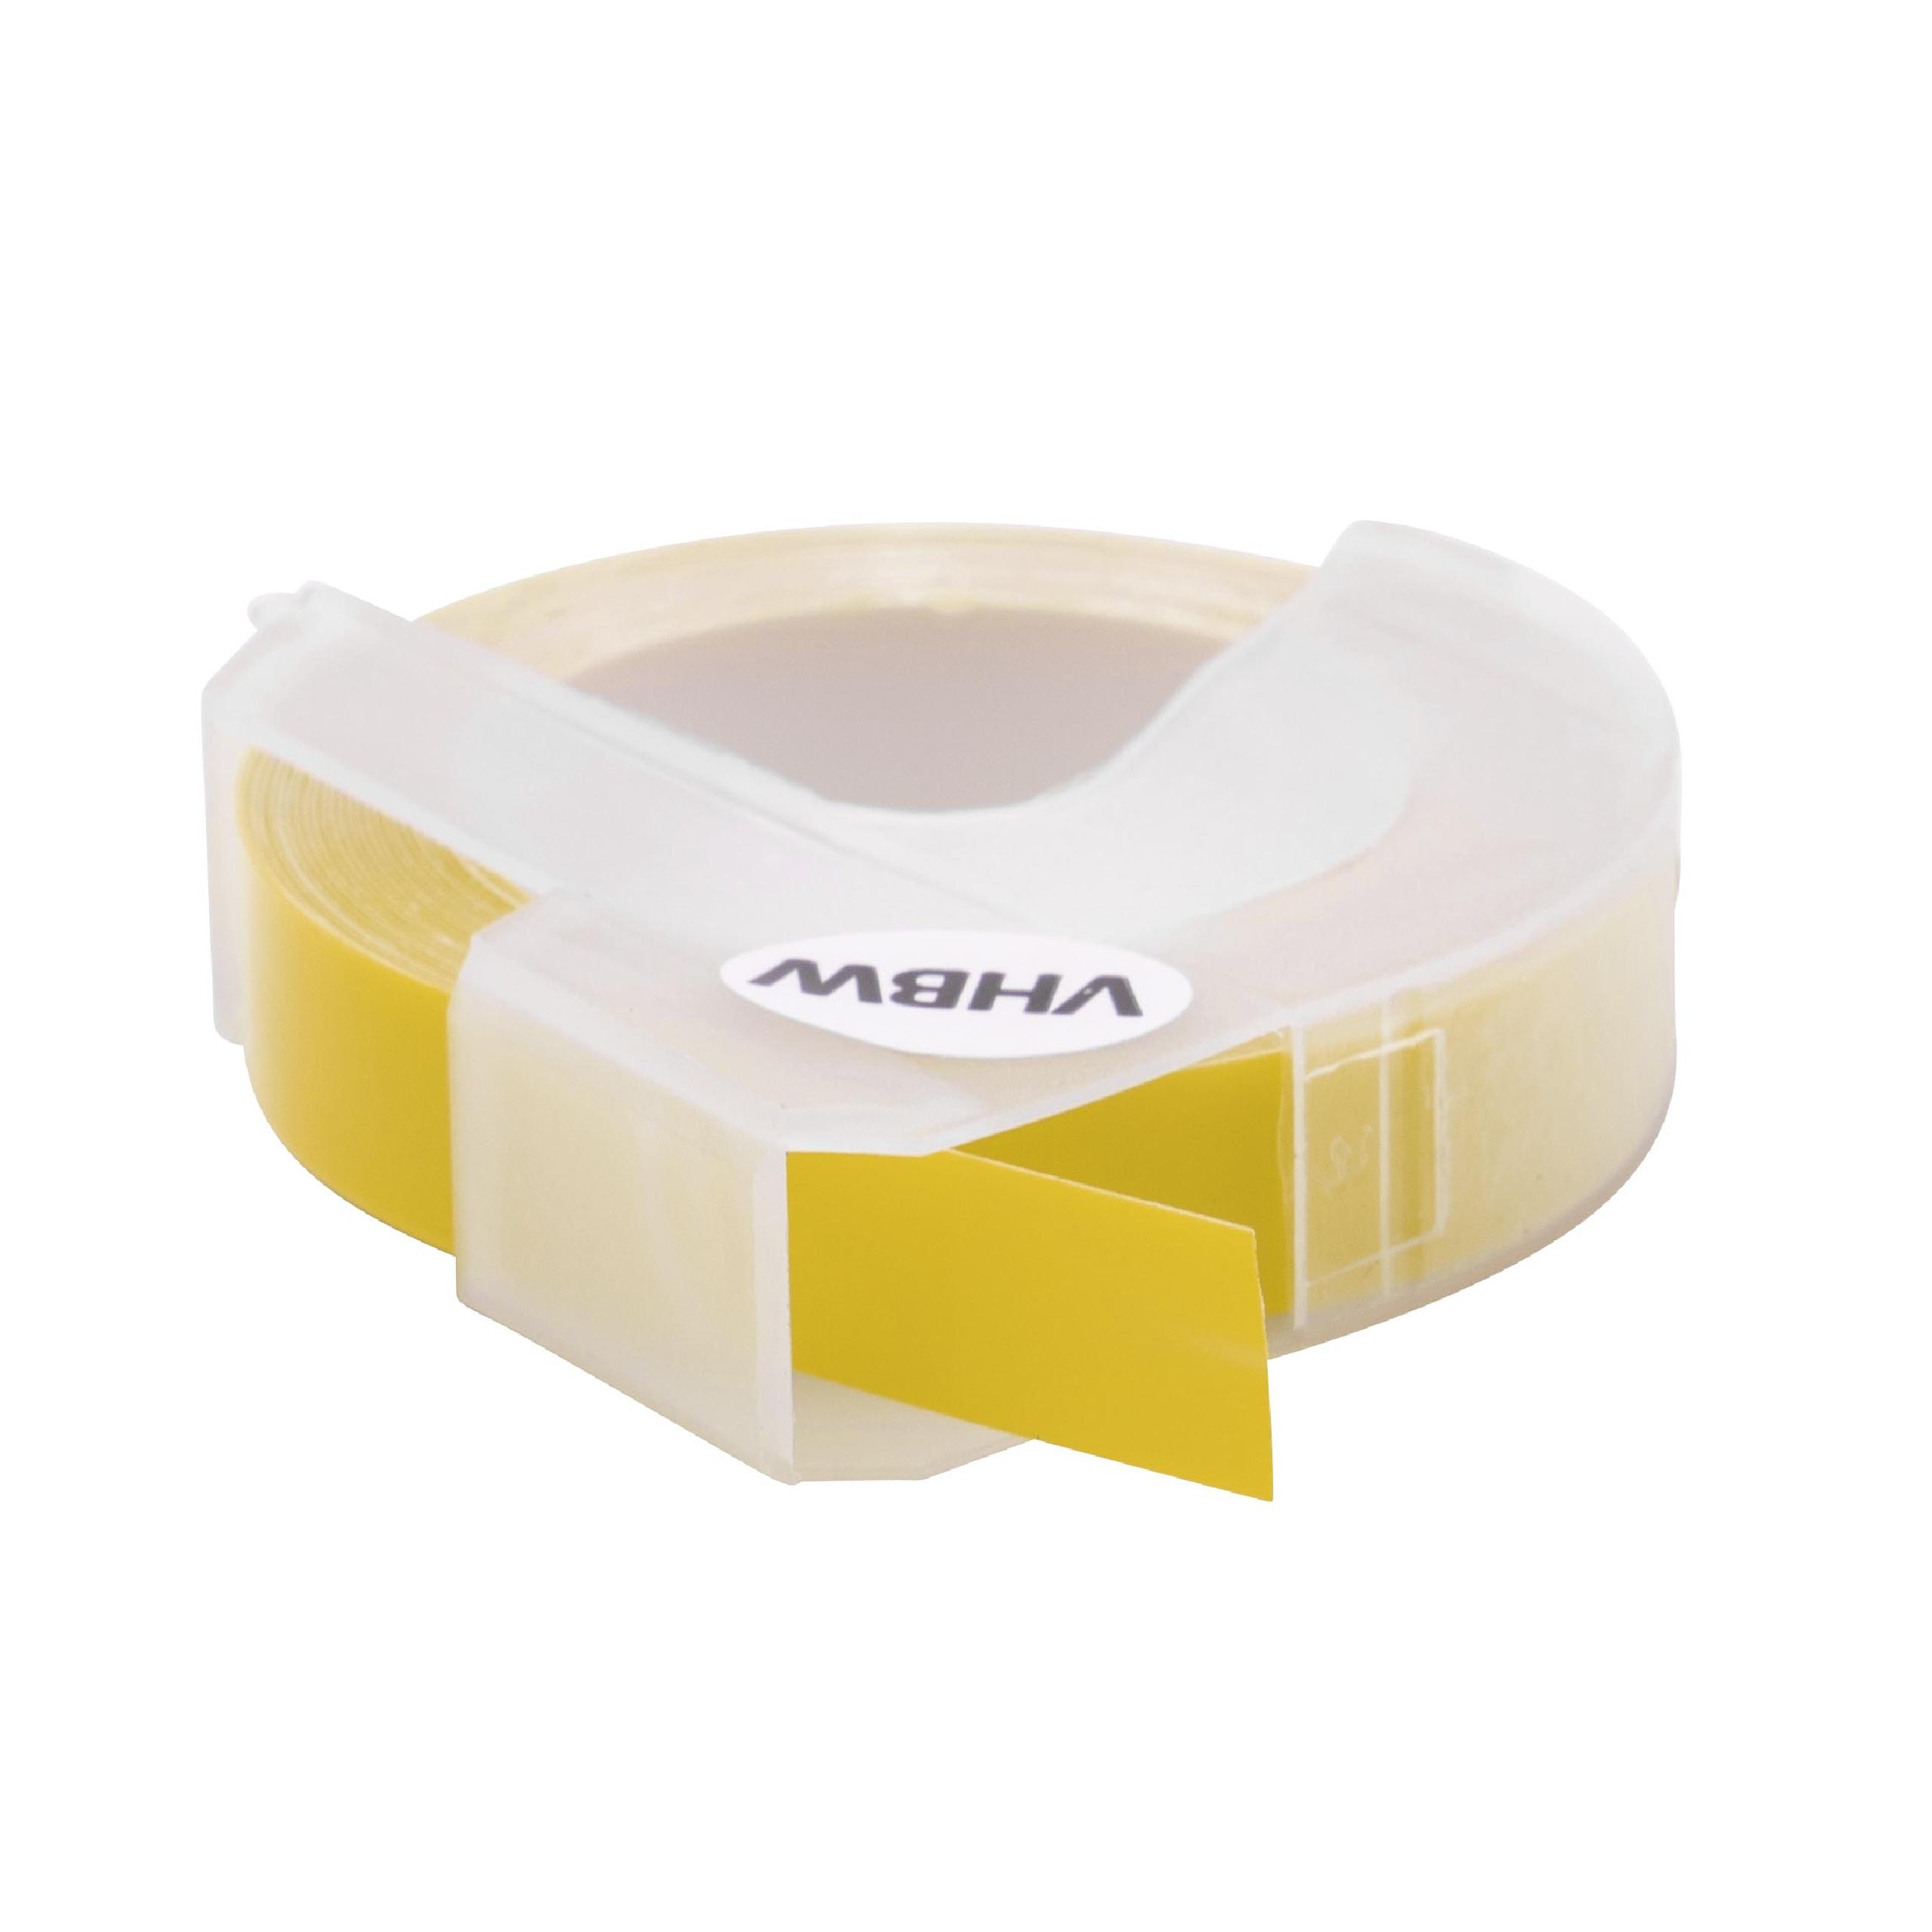 Nastro goffratura 3D sostituisce Dymo S0898160, 520108 per etichettatrice Motex 9mm bianco su giallo